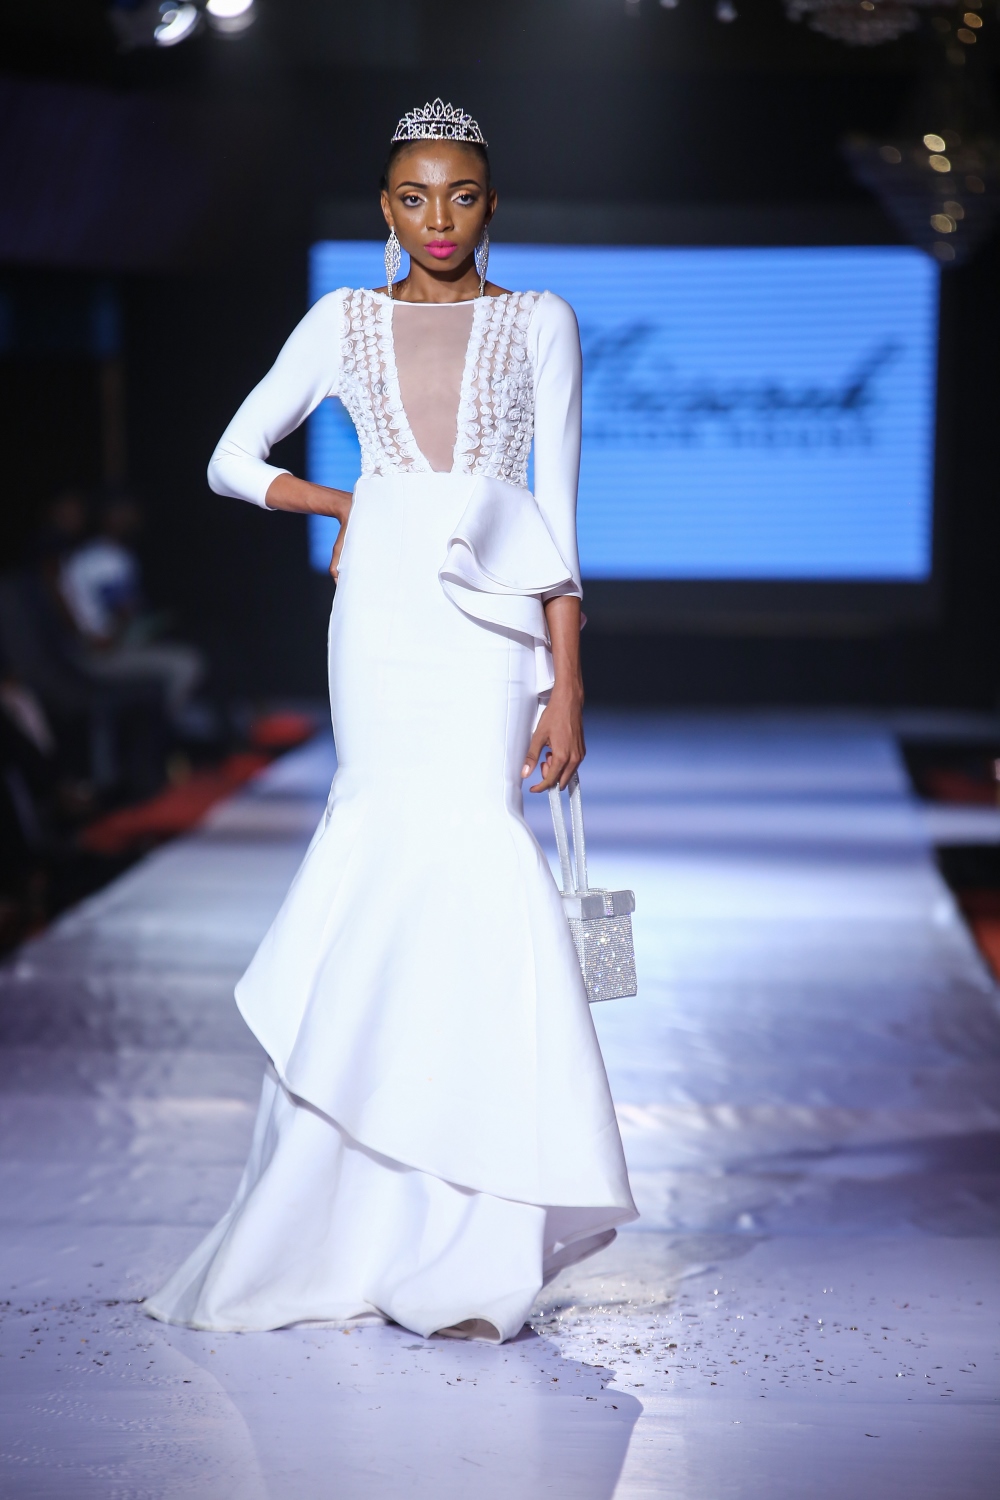 #AFWN17 | Africa Fashion Week Nigeria DAY 2: Micserah